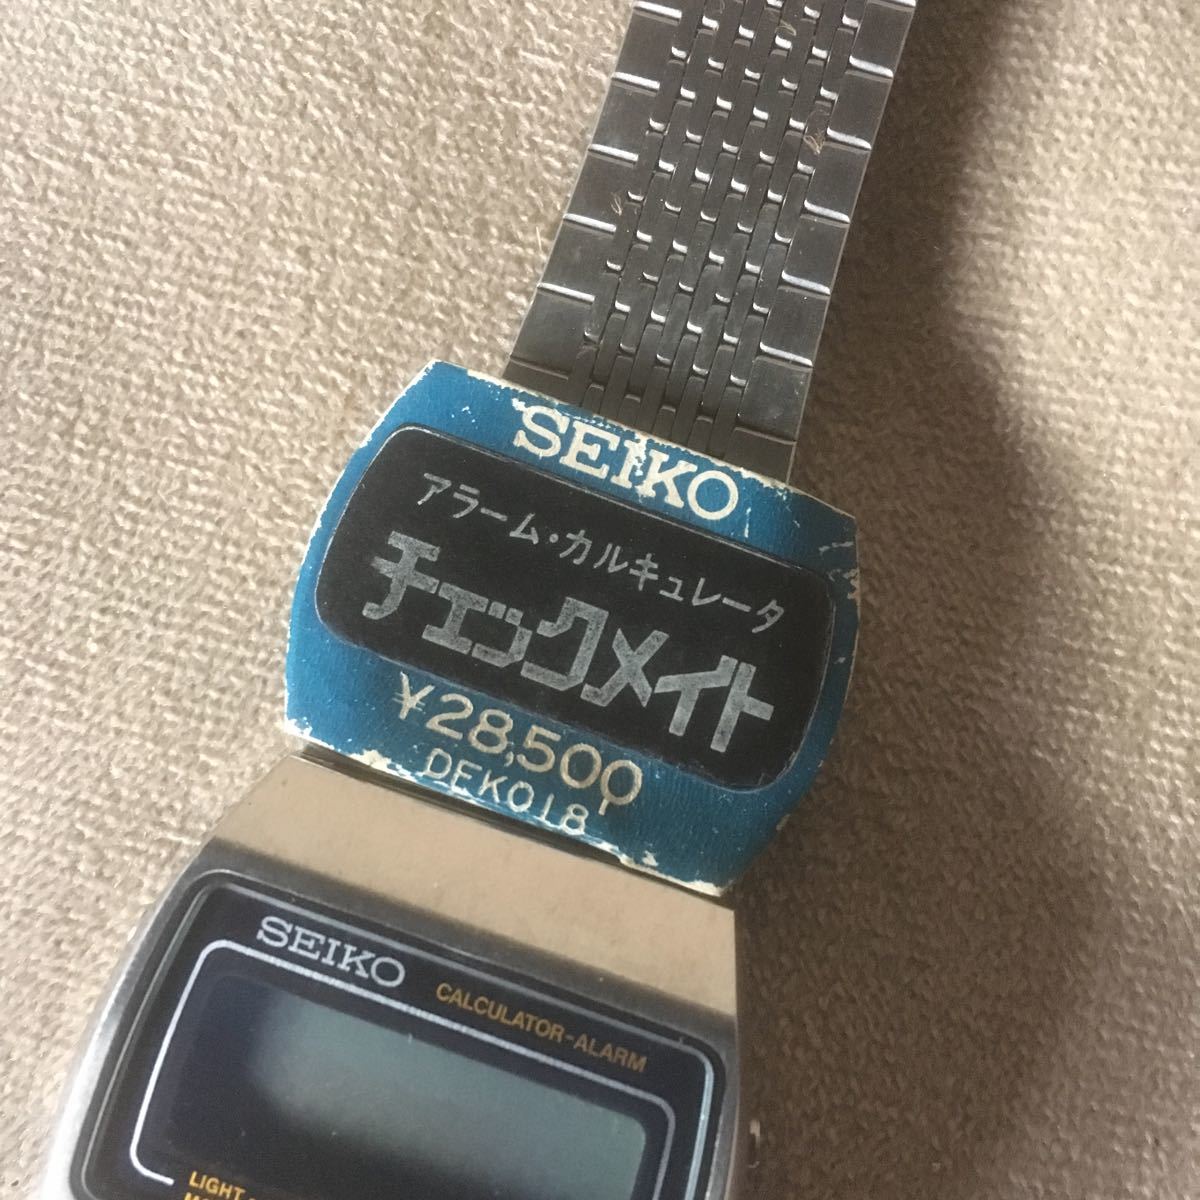 K7 SEIKO Seiko checkmate сигнализация наручные часы 0359-5000 неиспользуемый товар чёрный текущее состояние утиль 